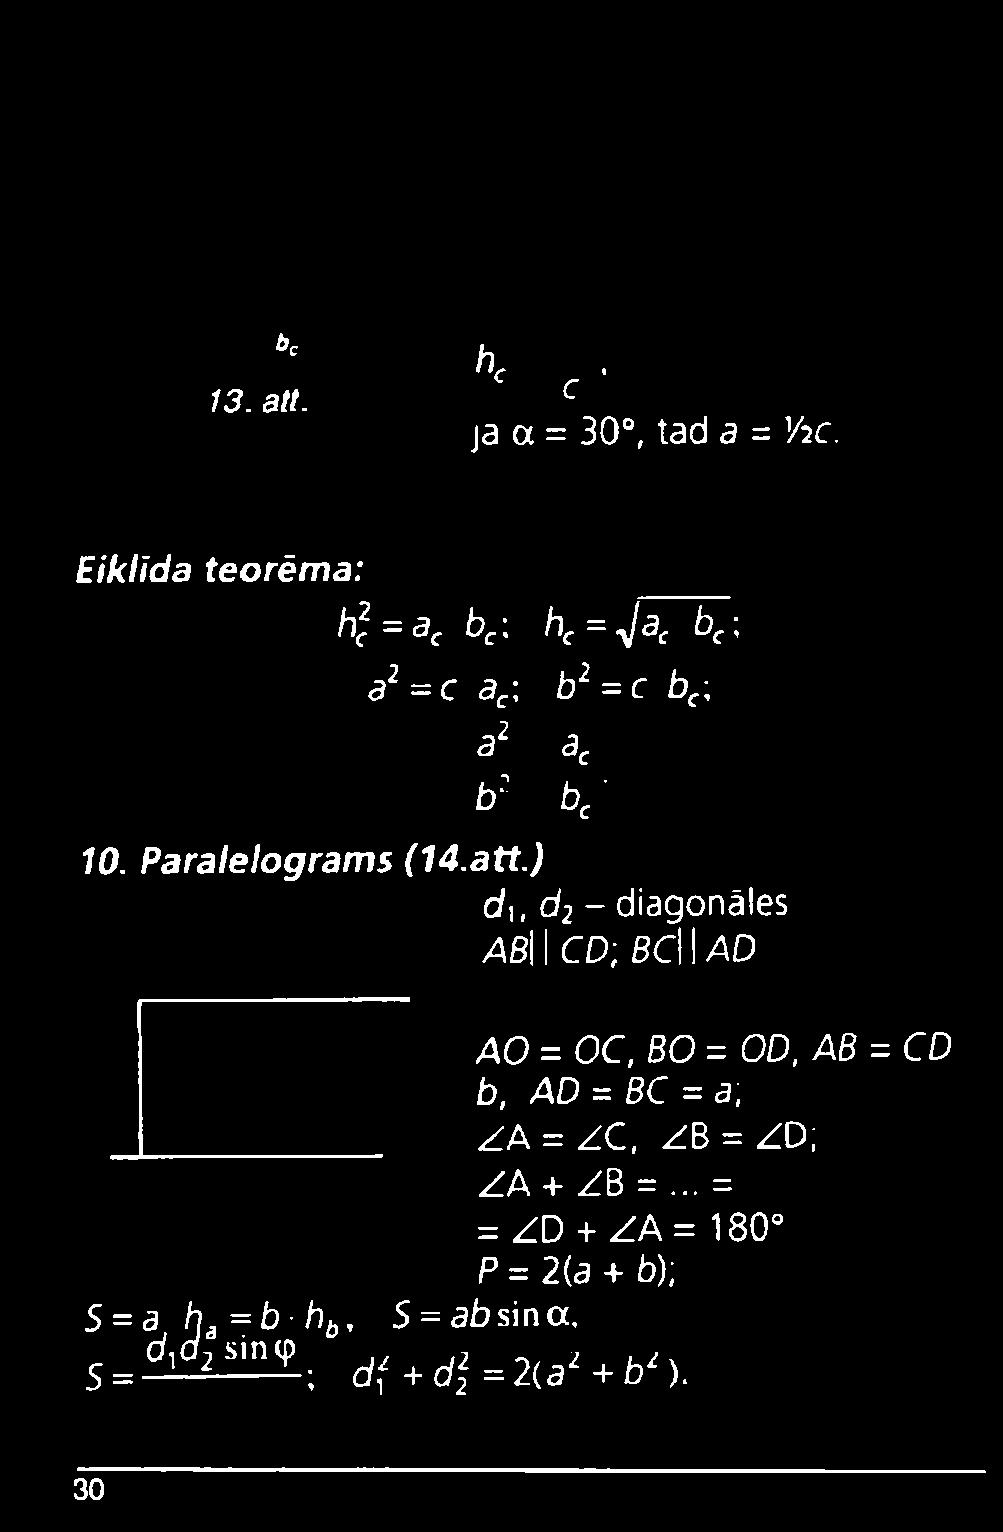 Paralelograms (14.att.